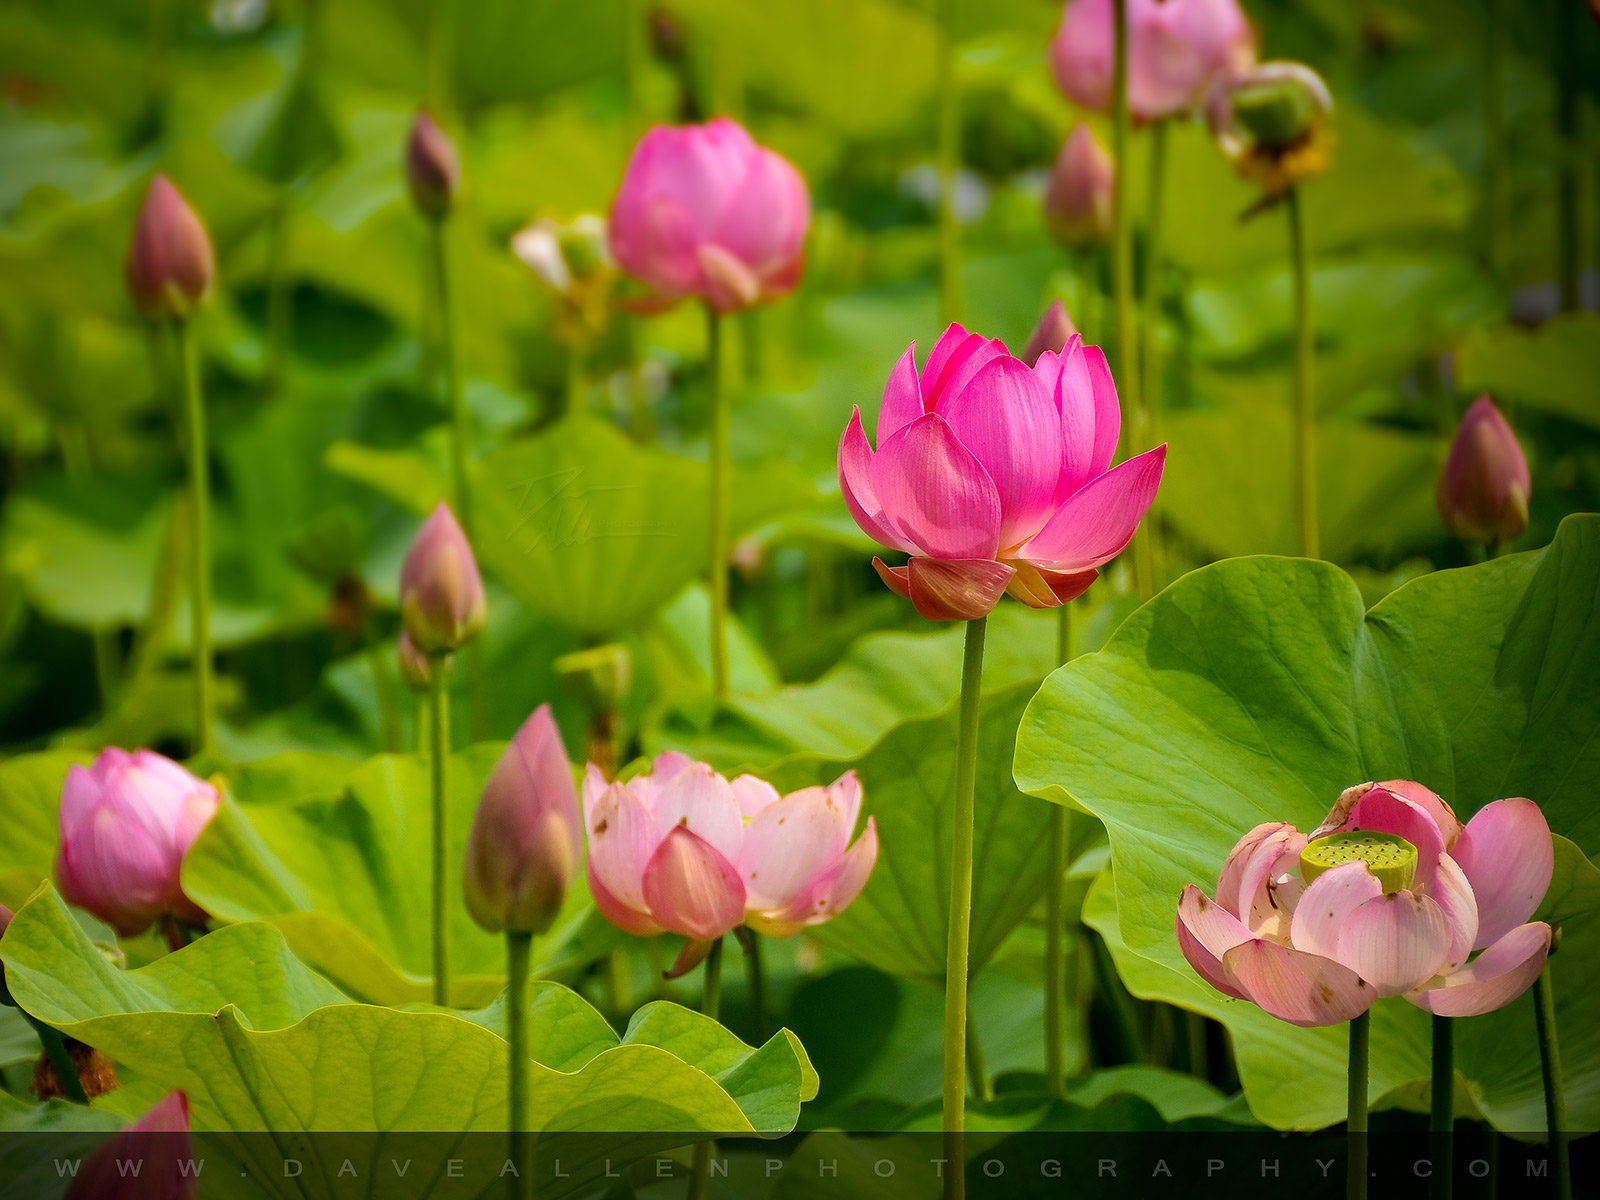 Hình nền hoa sen hồng miễn phí (Free pink lotus flower desktop wallpaper): Bạn đang tìm kiếm một loại hình nền miễn phí với hoa sen hồng? Hãy đến với những bức ảnh đẹp về hoa sen hồng trên màn hình máy tính của bạn. Những bản mẫu các hình nền đầy màu sắc về hoa sen hồng chắc chắn sẽ đem đến cho bạn những trải nghiệm mới mẻ và đầy ấn tượng.